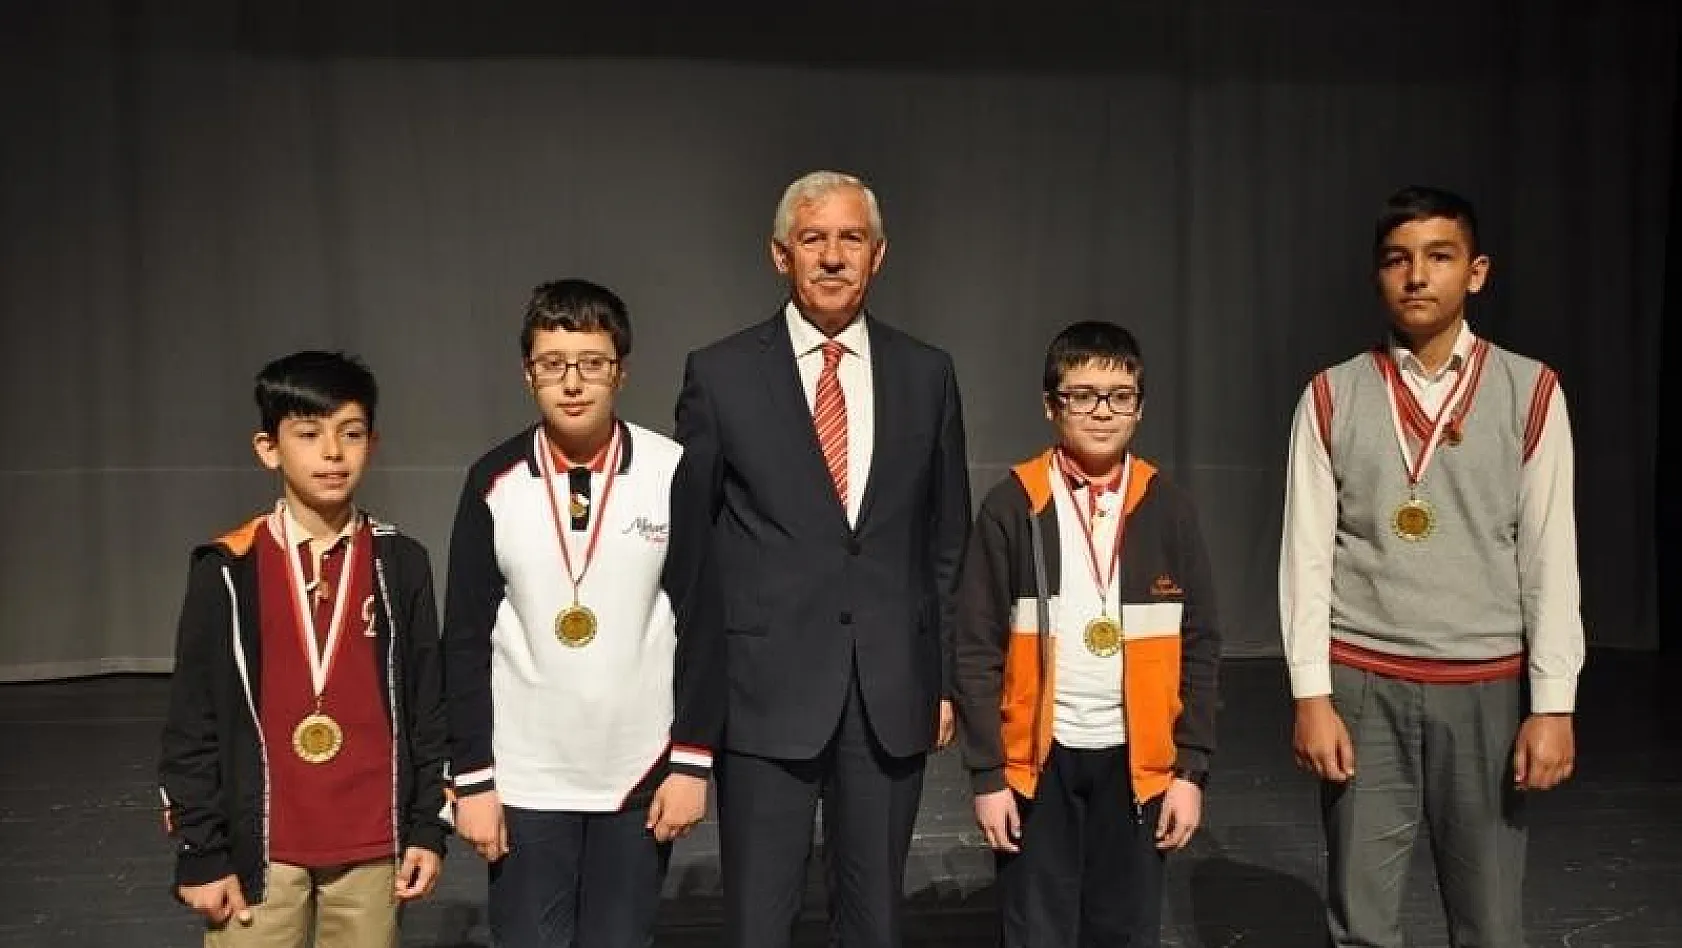 İl Milli Eğitim Müdürü Elmalı Matematik Yarışması Ödül Törenine Katıldı
